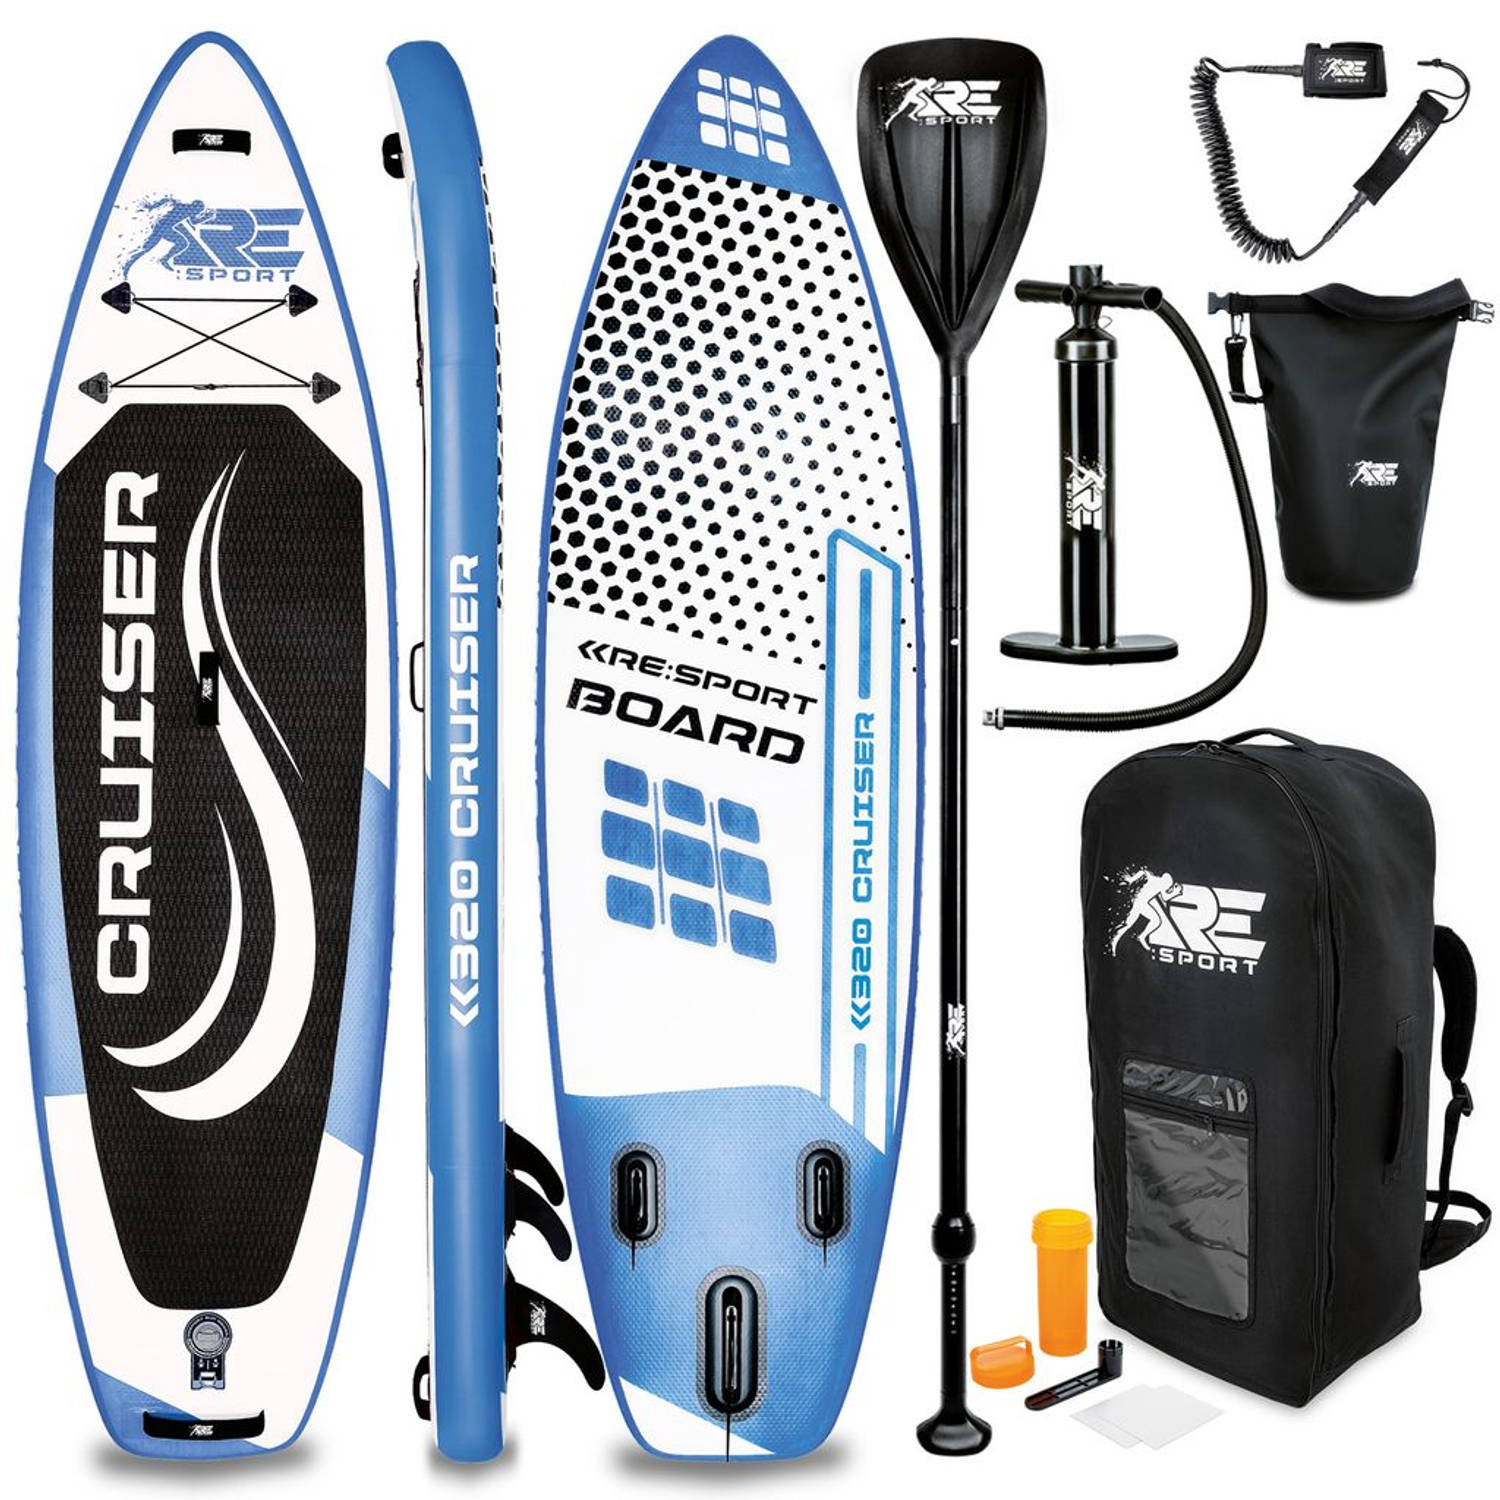 Re: Sport-sup Board 320 Cm Blauw-supboard- Opblaasbaar- Stand Up Paddle Set- Surfboard --Paddling Pr